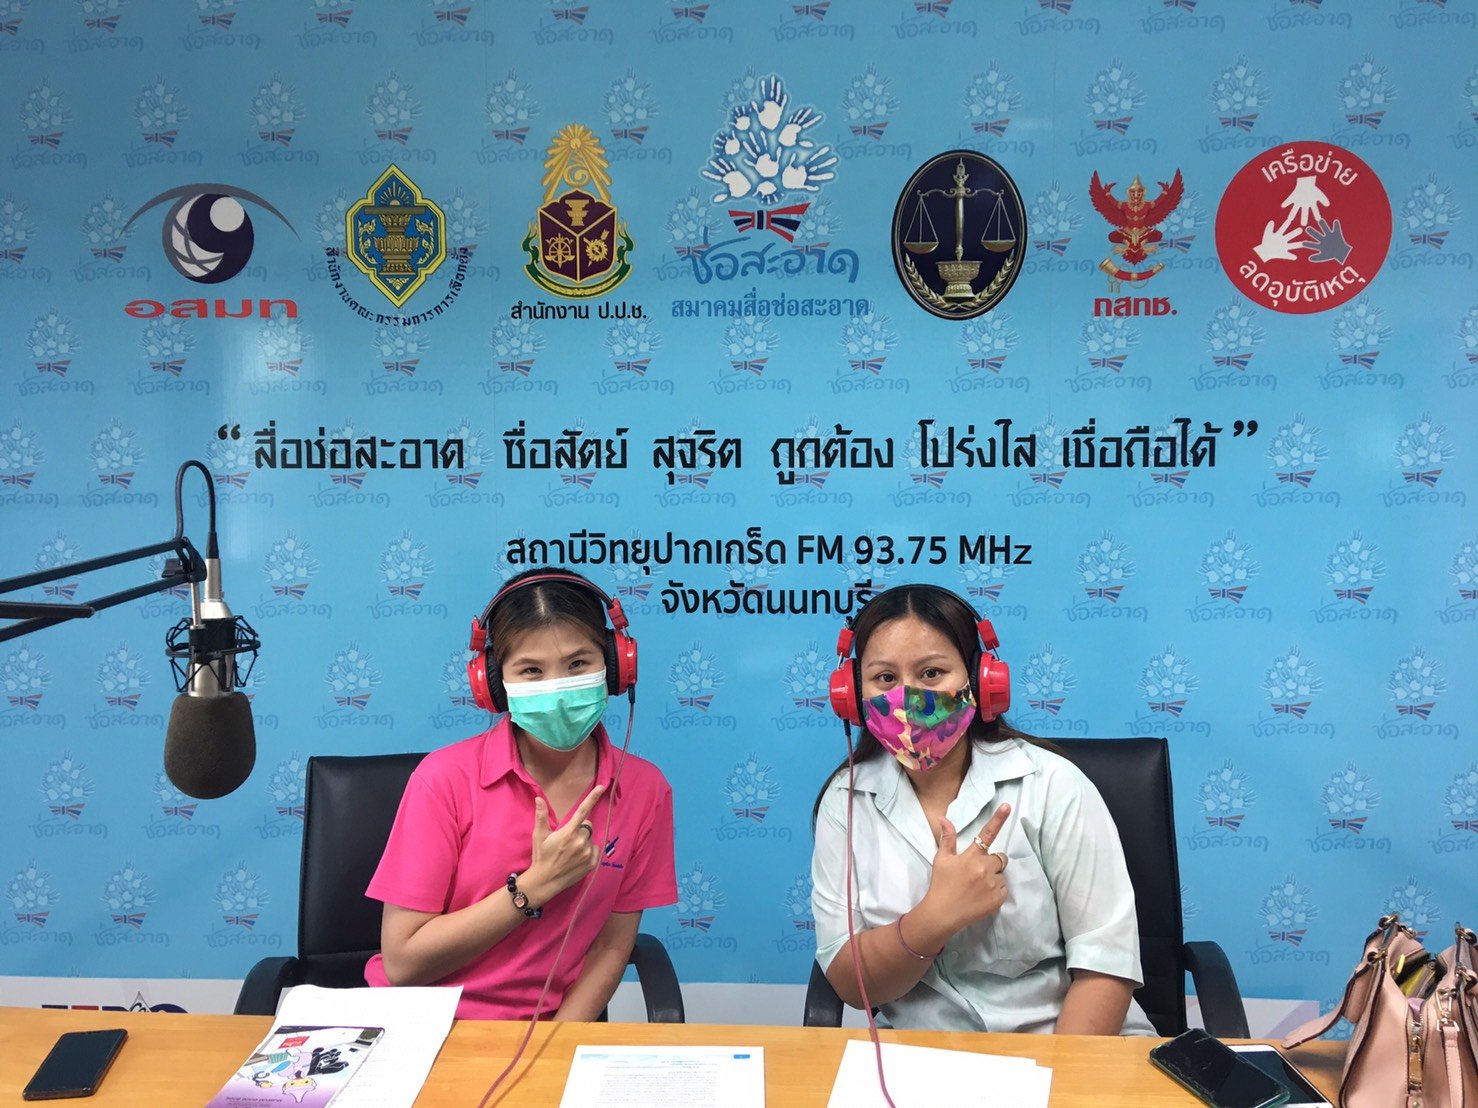 รายการ “คนไทยไม่ทนต่อการทุจริต” วันเสาร์ที่ 4 กันยายน 2564 เวลา 18.00-18.30 น.